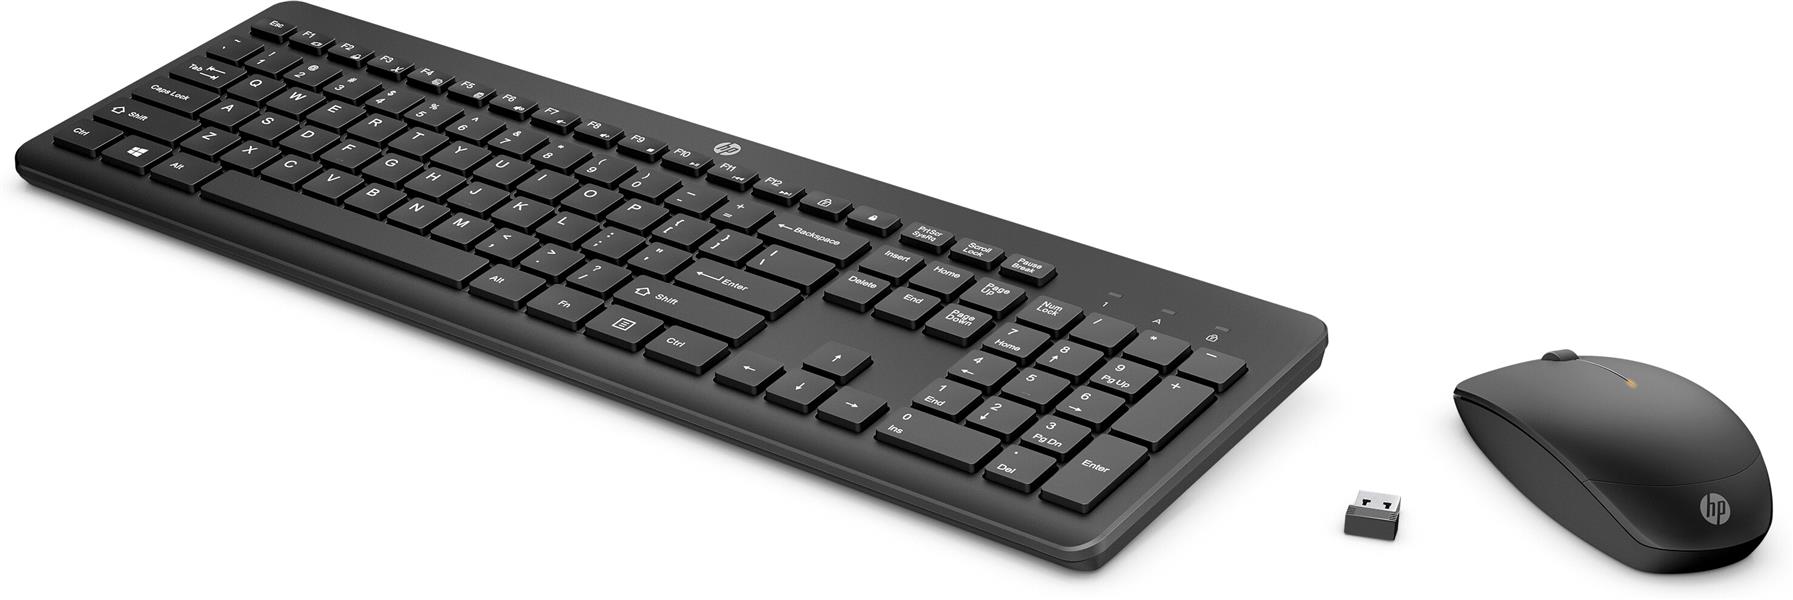 HP 235 draadloze muis en toetsenbordcombo (1Y4D0AA) + Prelude rugzak, 15,6 inch (1E7D6AA)